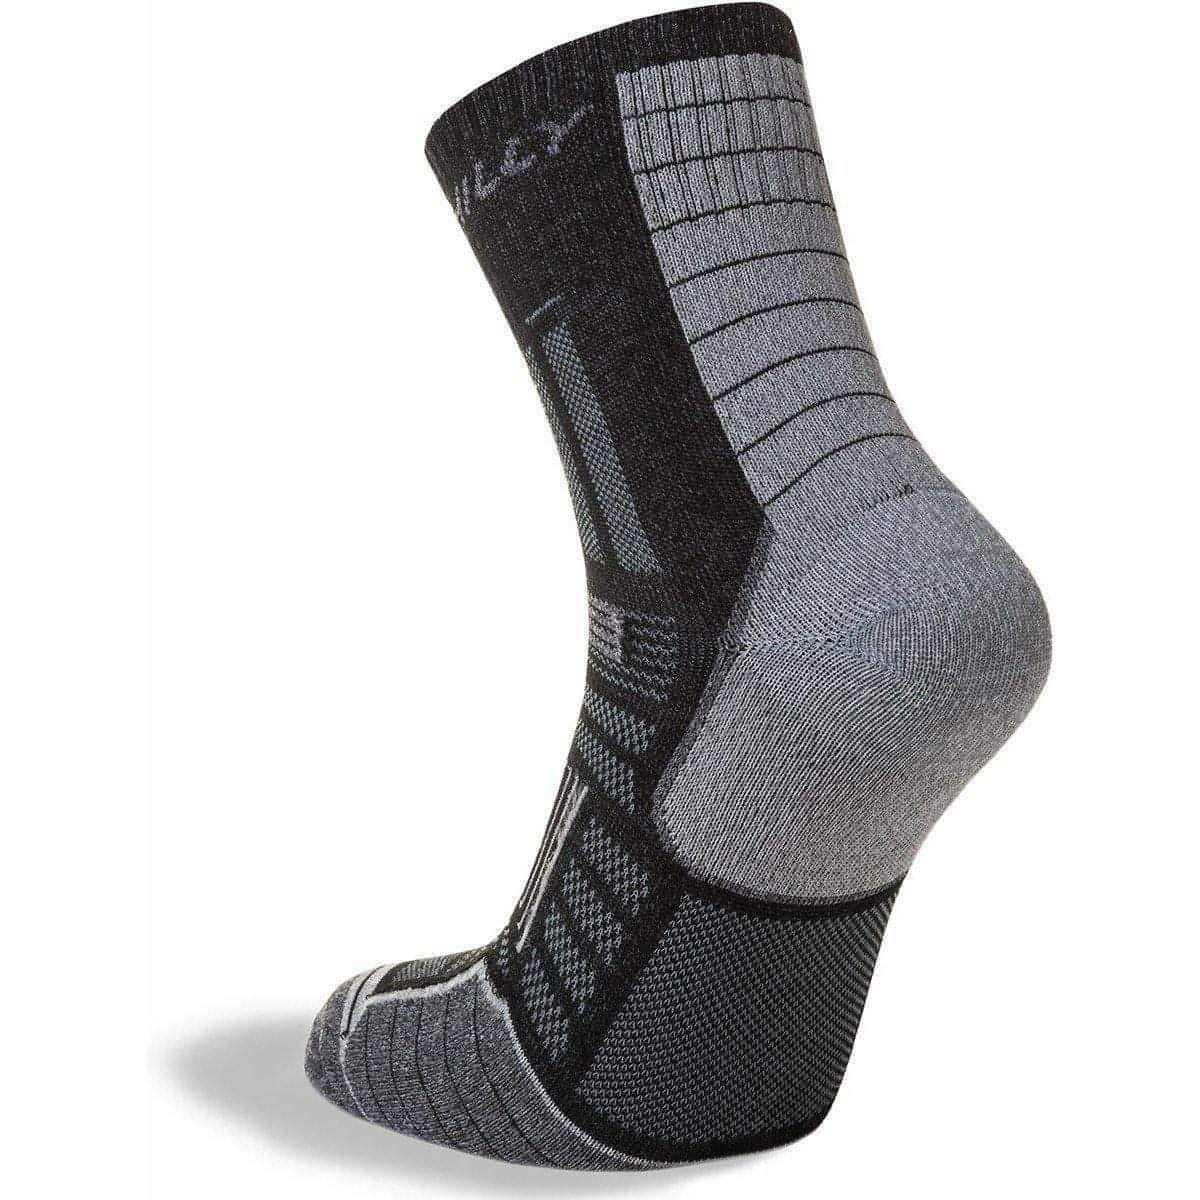 Hilly Twin Skin Anklet Running Socks - Black - Start Fitness